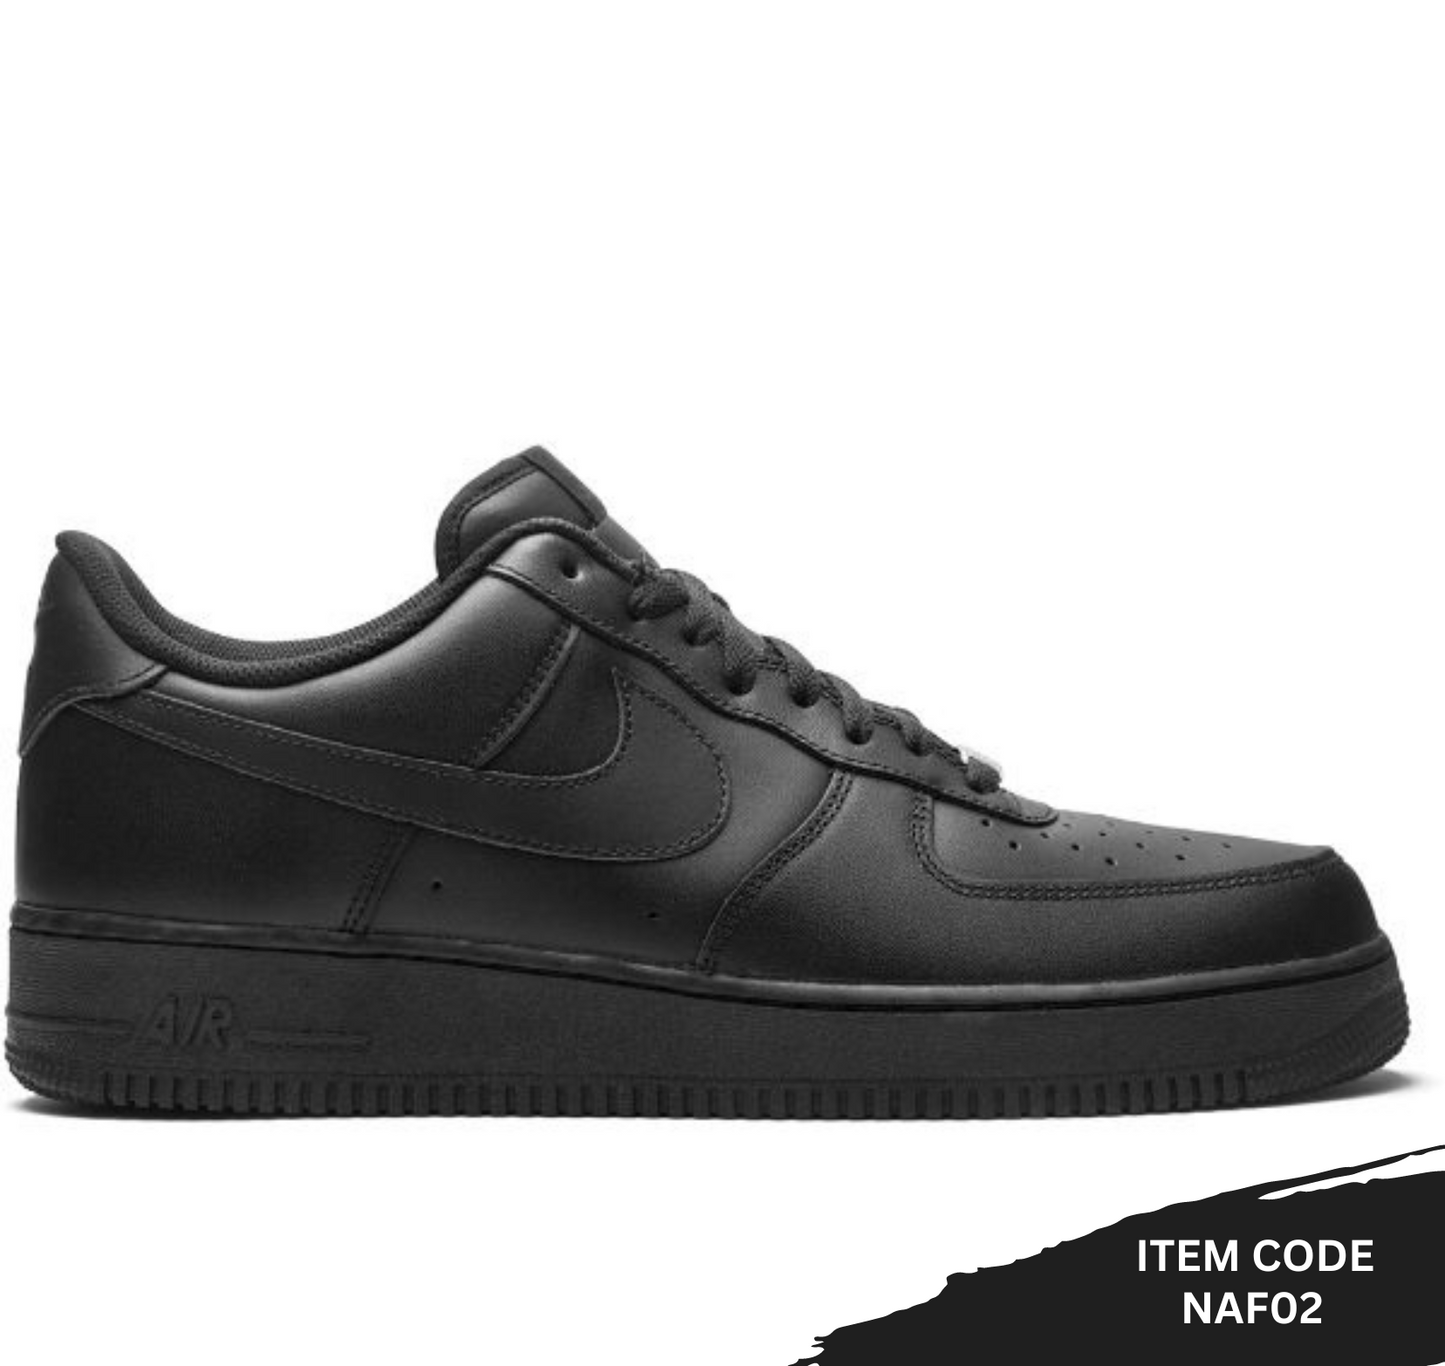 Nike - Air Force 1 Low "Triple Black" sneakers